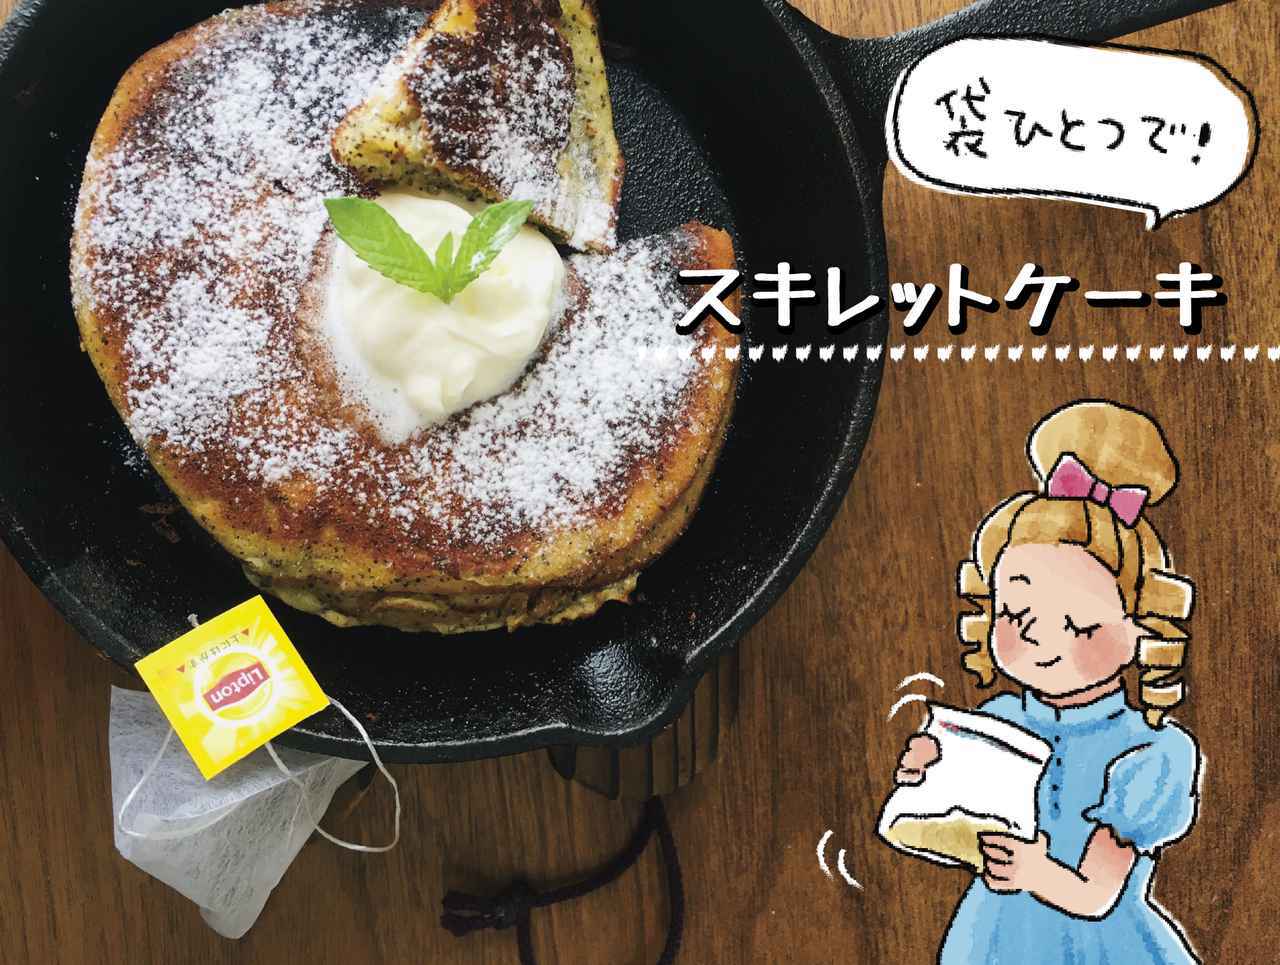 スキレットレシピ キャンプにおすすめ 袋ひとつで簡単にできるケーキレシピ3選 お役立ちキャンプ情報 2020年06月19日 日本気象協会 Tenki Jp